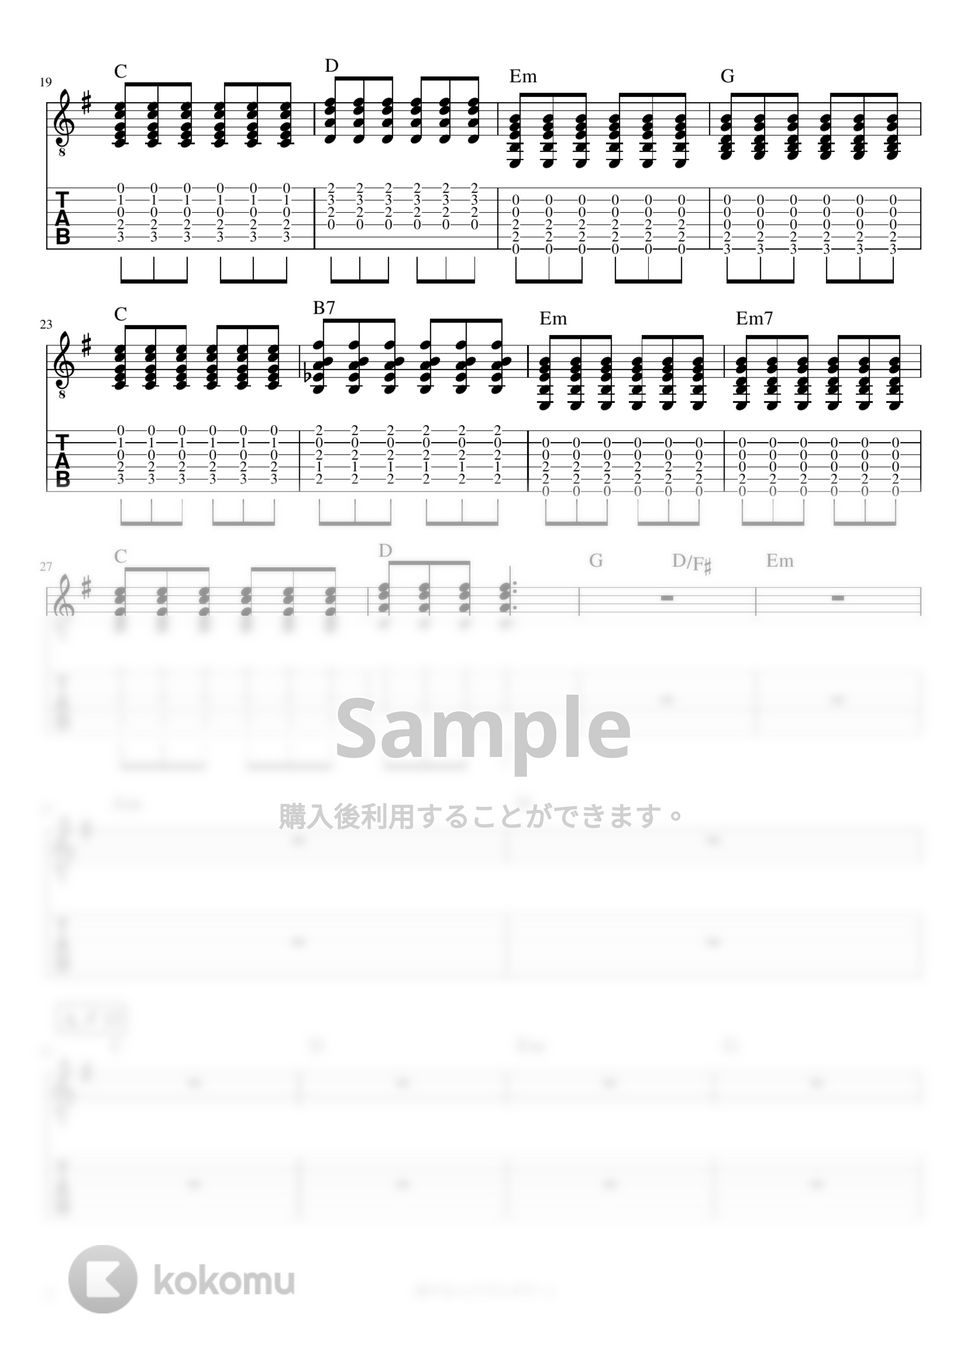 マカロニえんぴつ - 溶けない (リードギター) by J-ROCKチャンネル